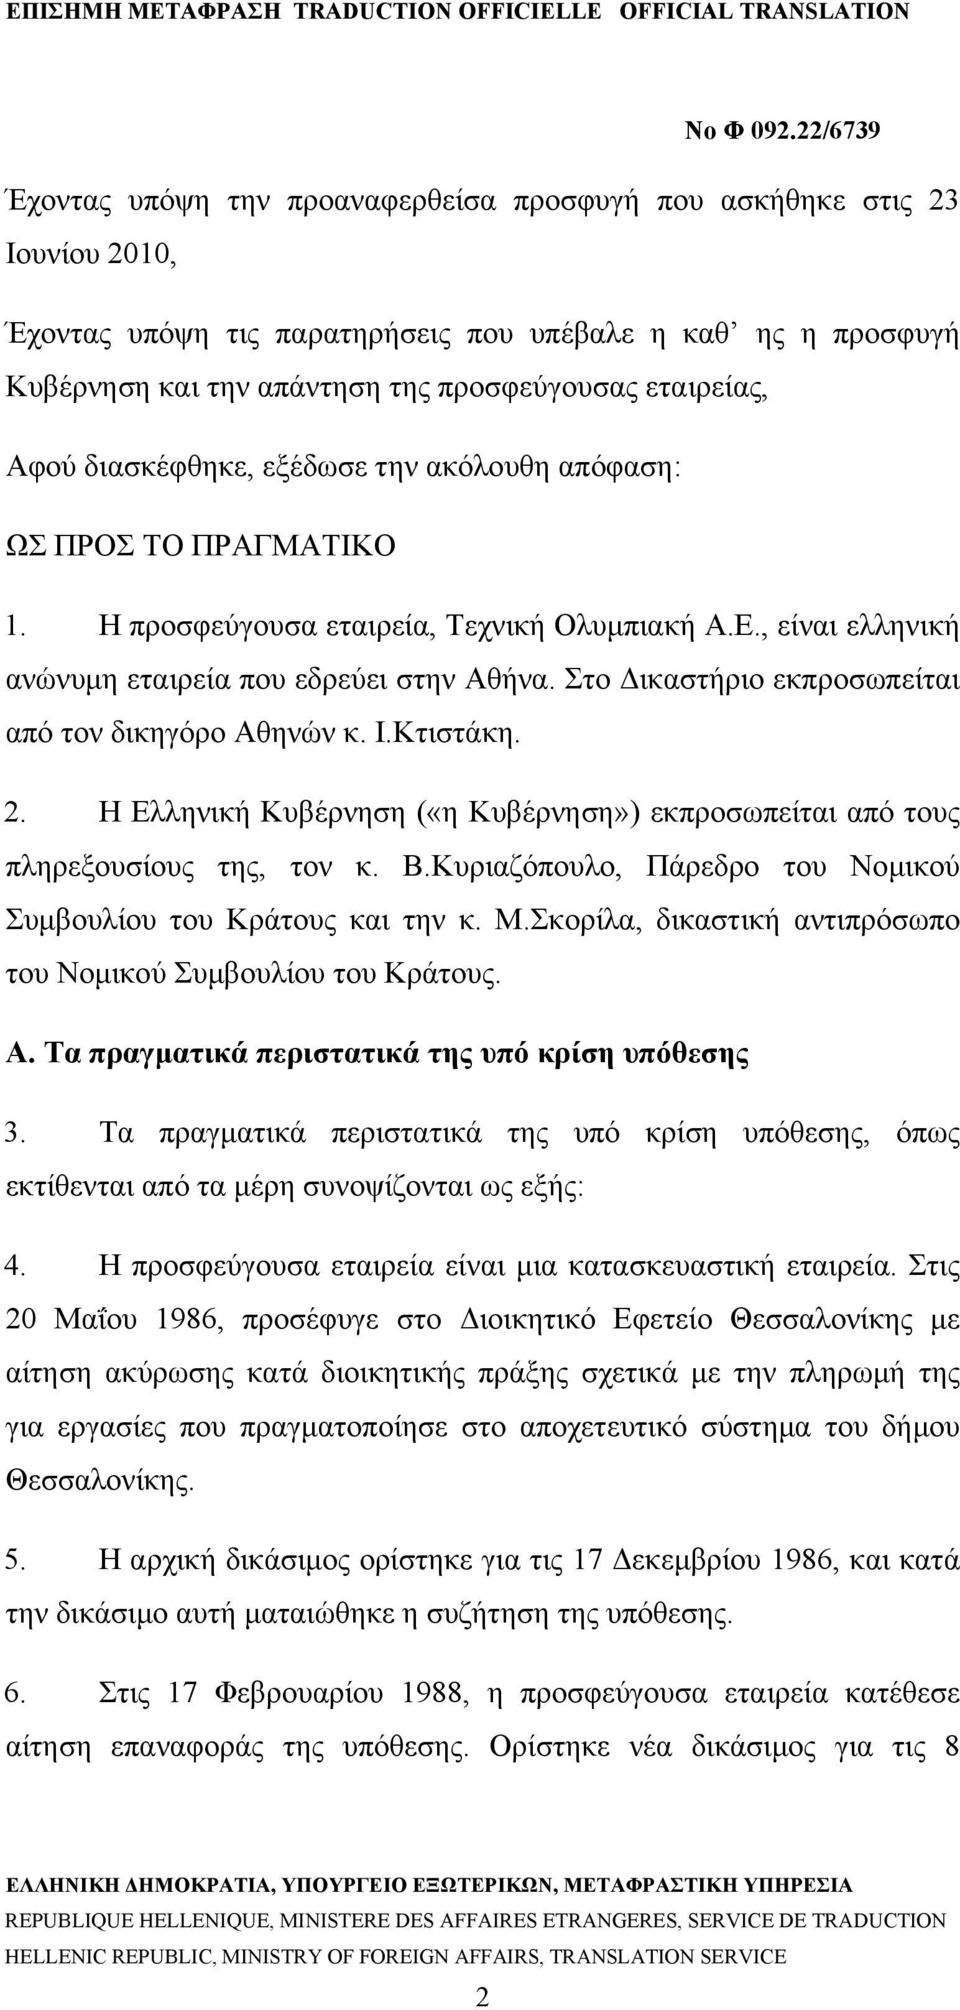 Στο Δικαστήριο εκπροσωπείται από τον δικηγόρο Αθηνών κ. Ι.Κτιστάκη. 2. Η Ελληνική Κυβέρνηση («η Κυβέρνηση») εκπροσωπείται από τους πληρεξουσίους της, τον κ. Β.